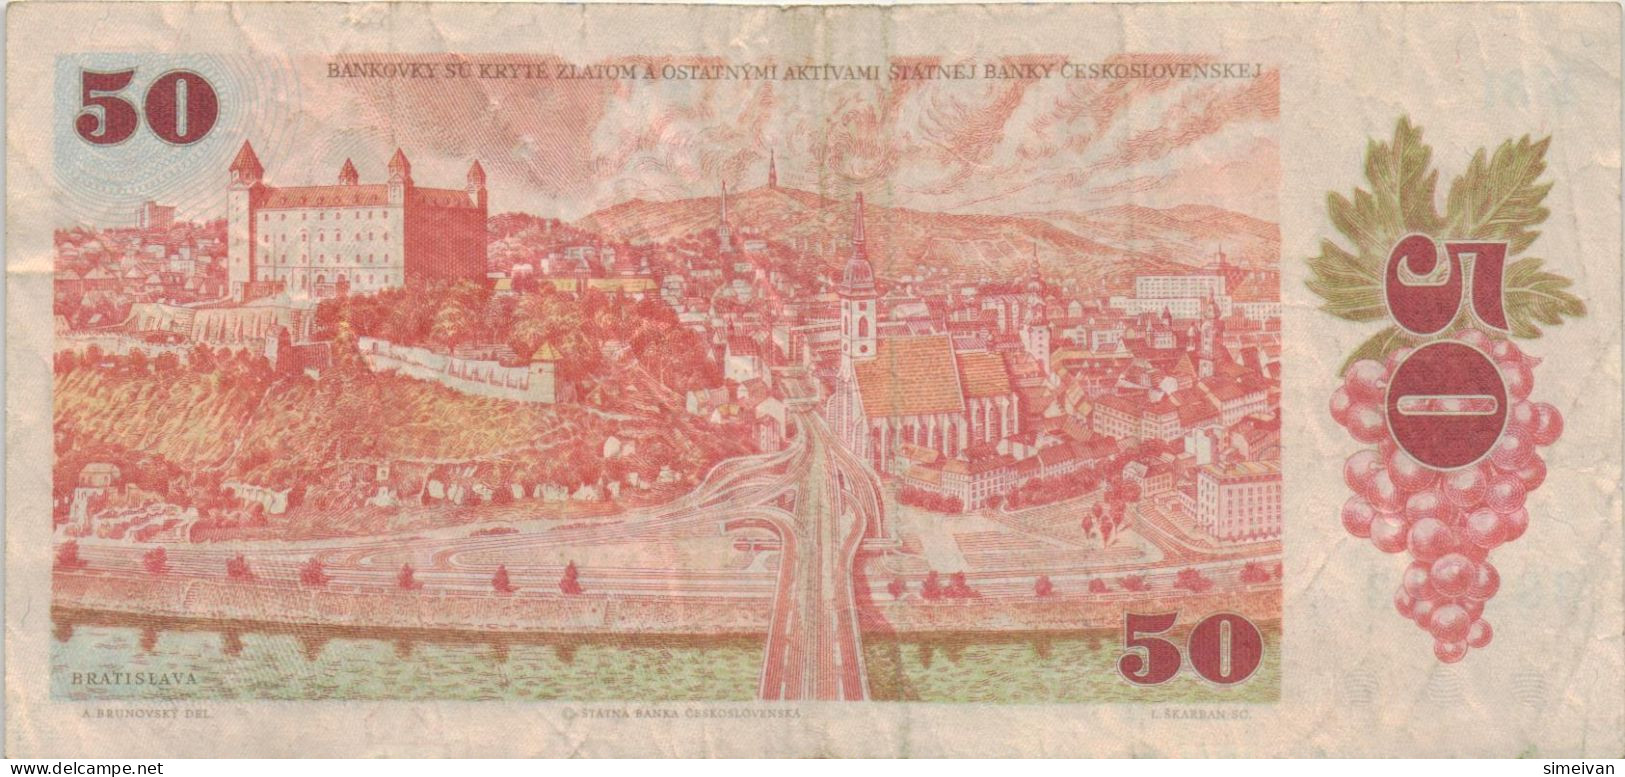 Czechoslovakia 50 Korun 1987 P-96a Banknote Europe Currency Tchécoslovaquie Tschechoslowakei #5258 - Cecoslovacchia